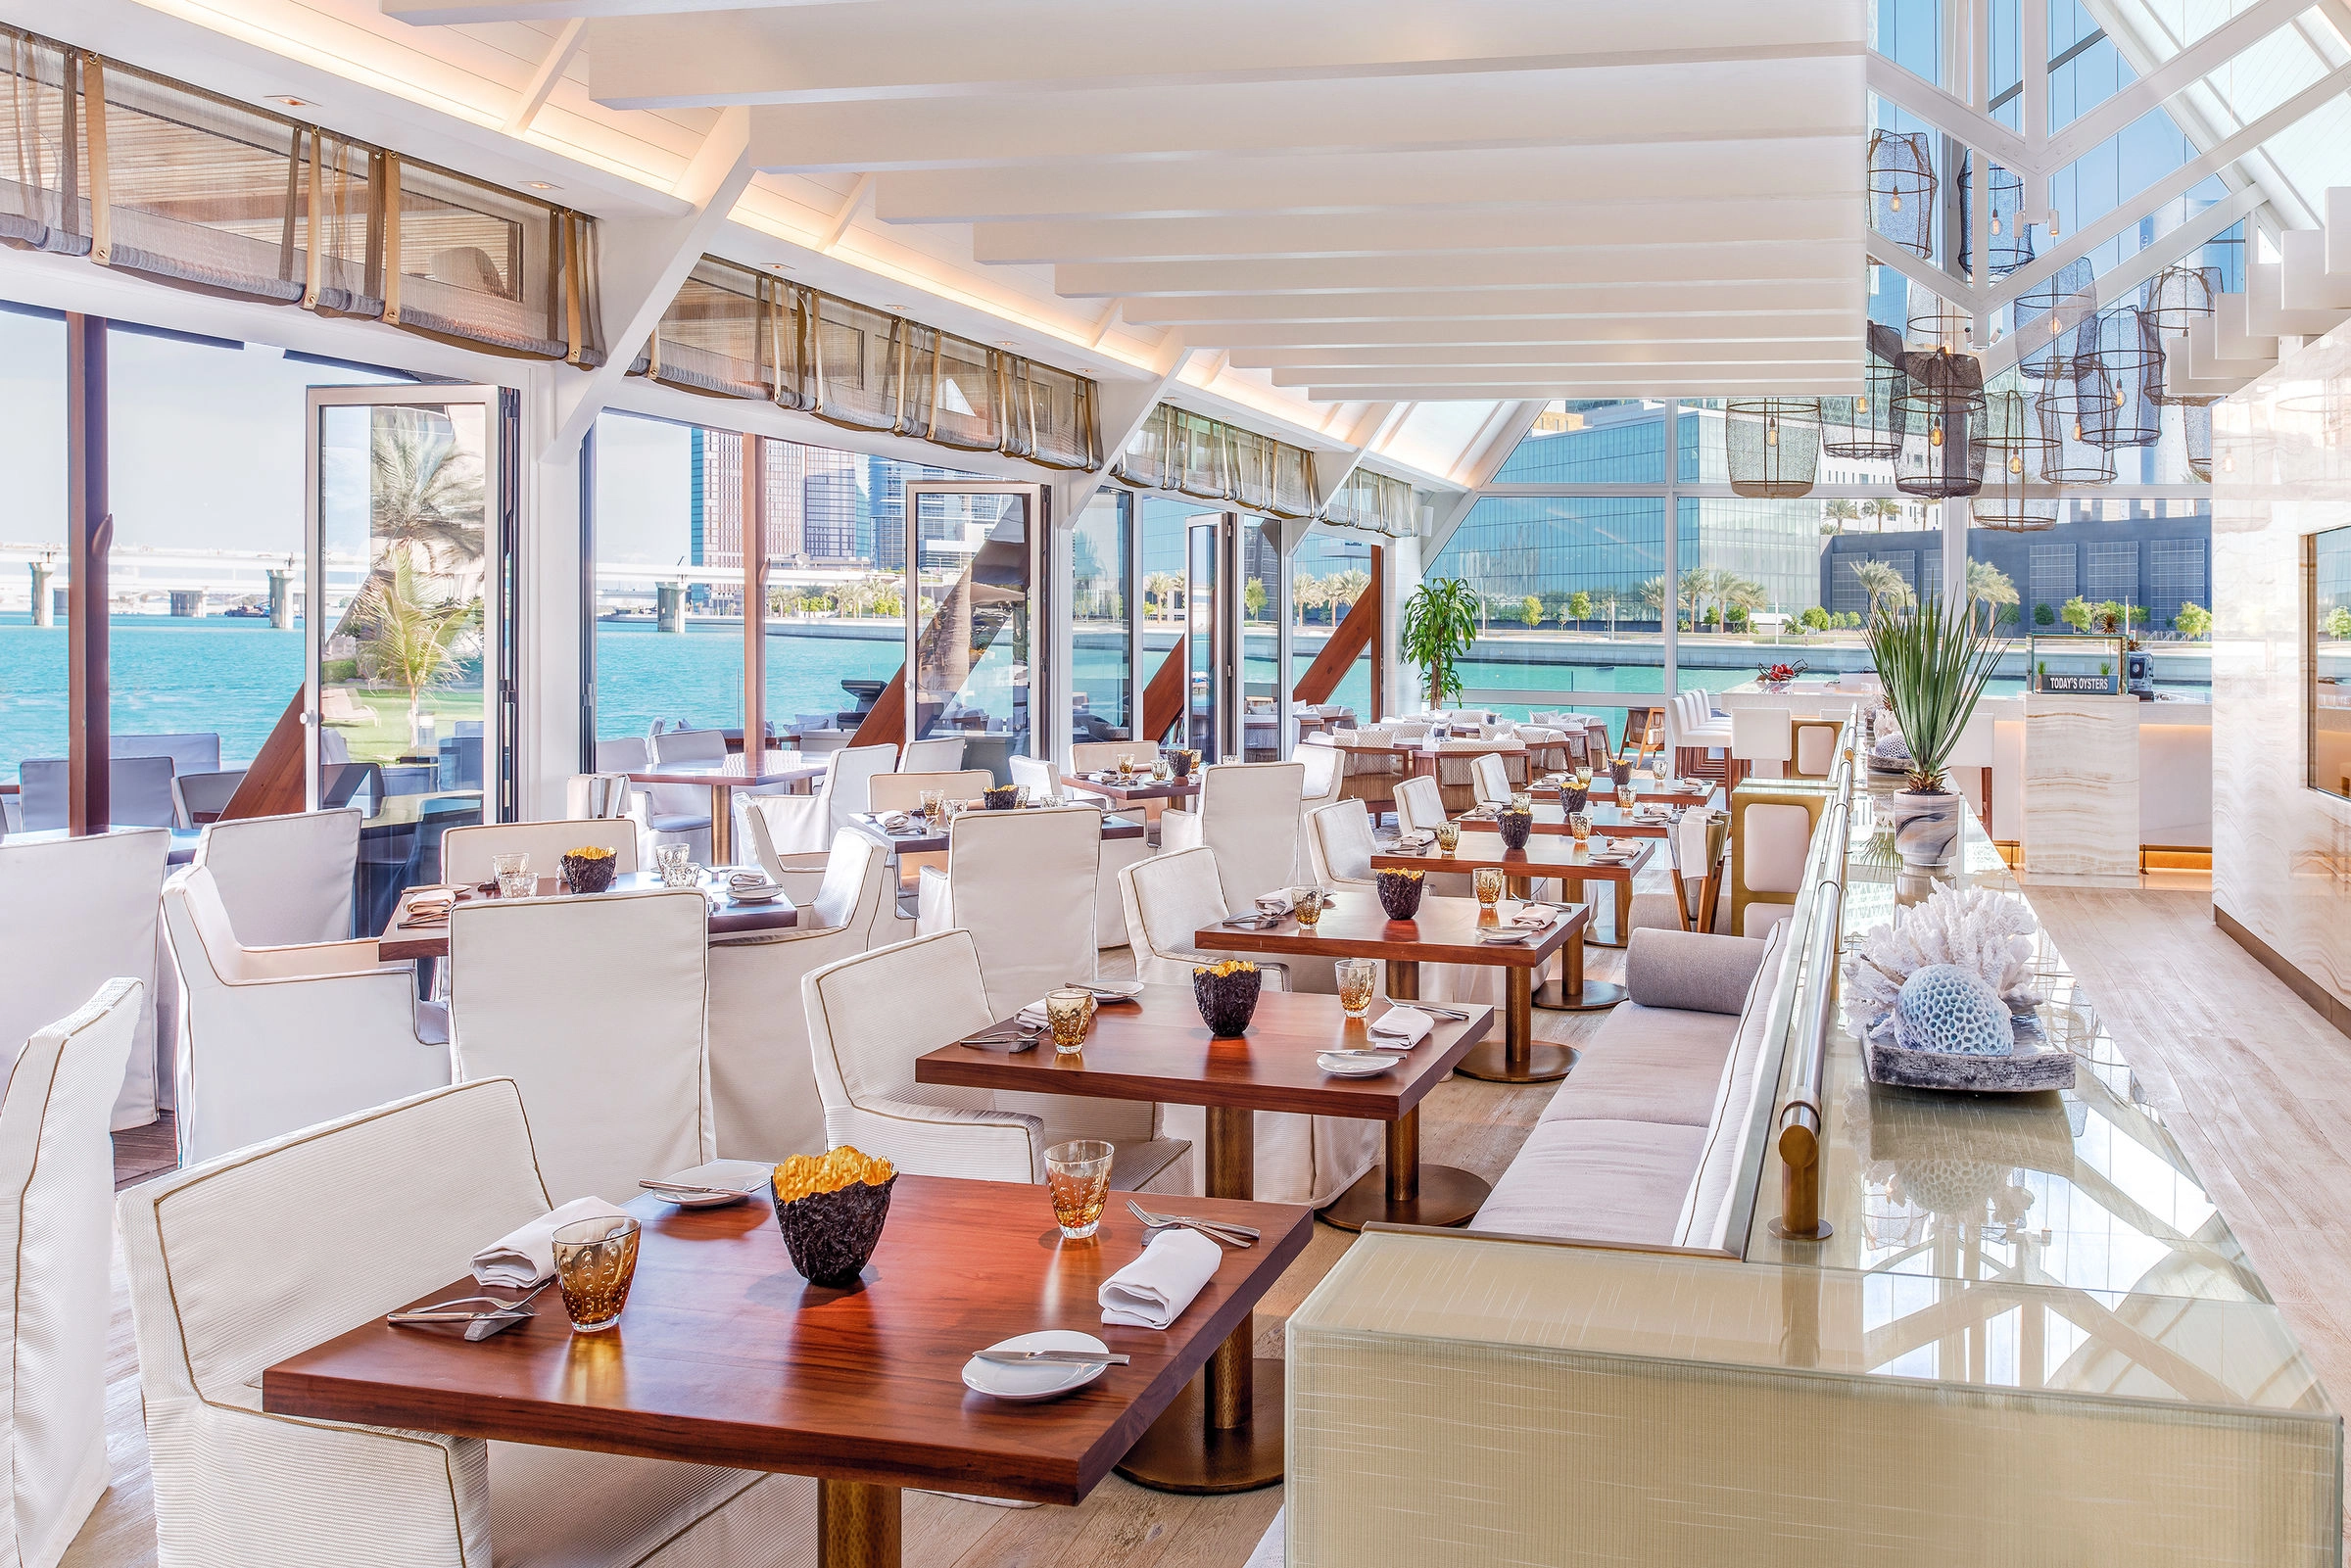 Лучшие рестораны с морепродуктами в ОАЭ